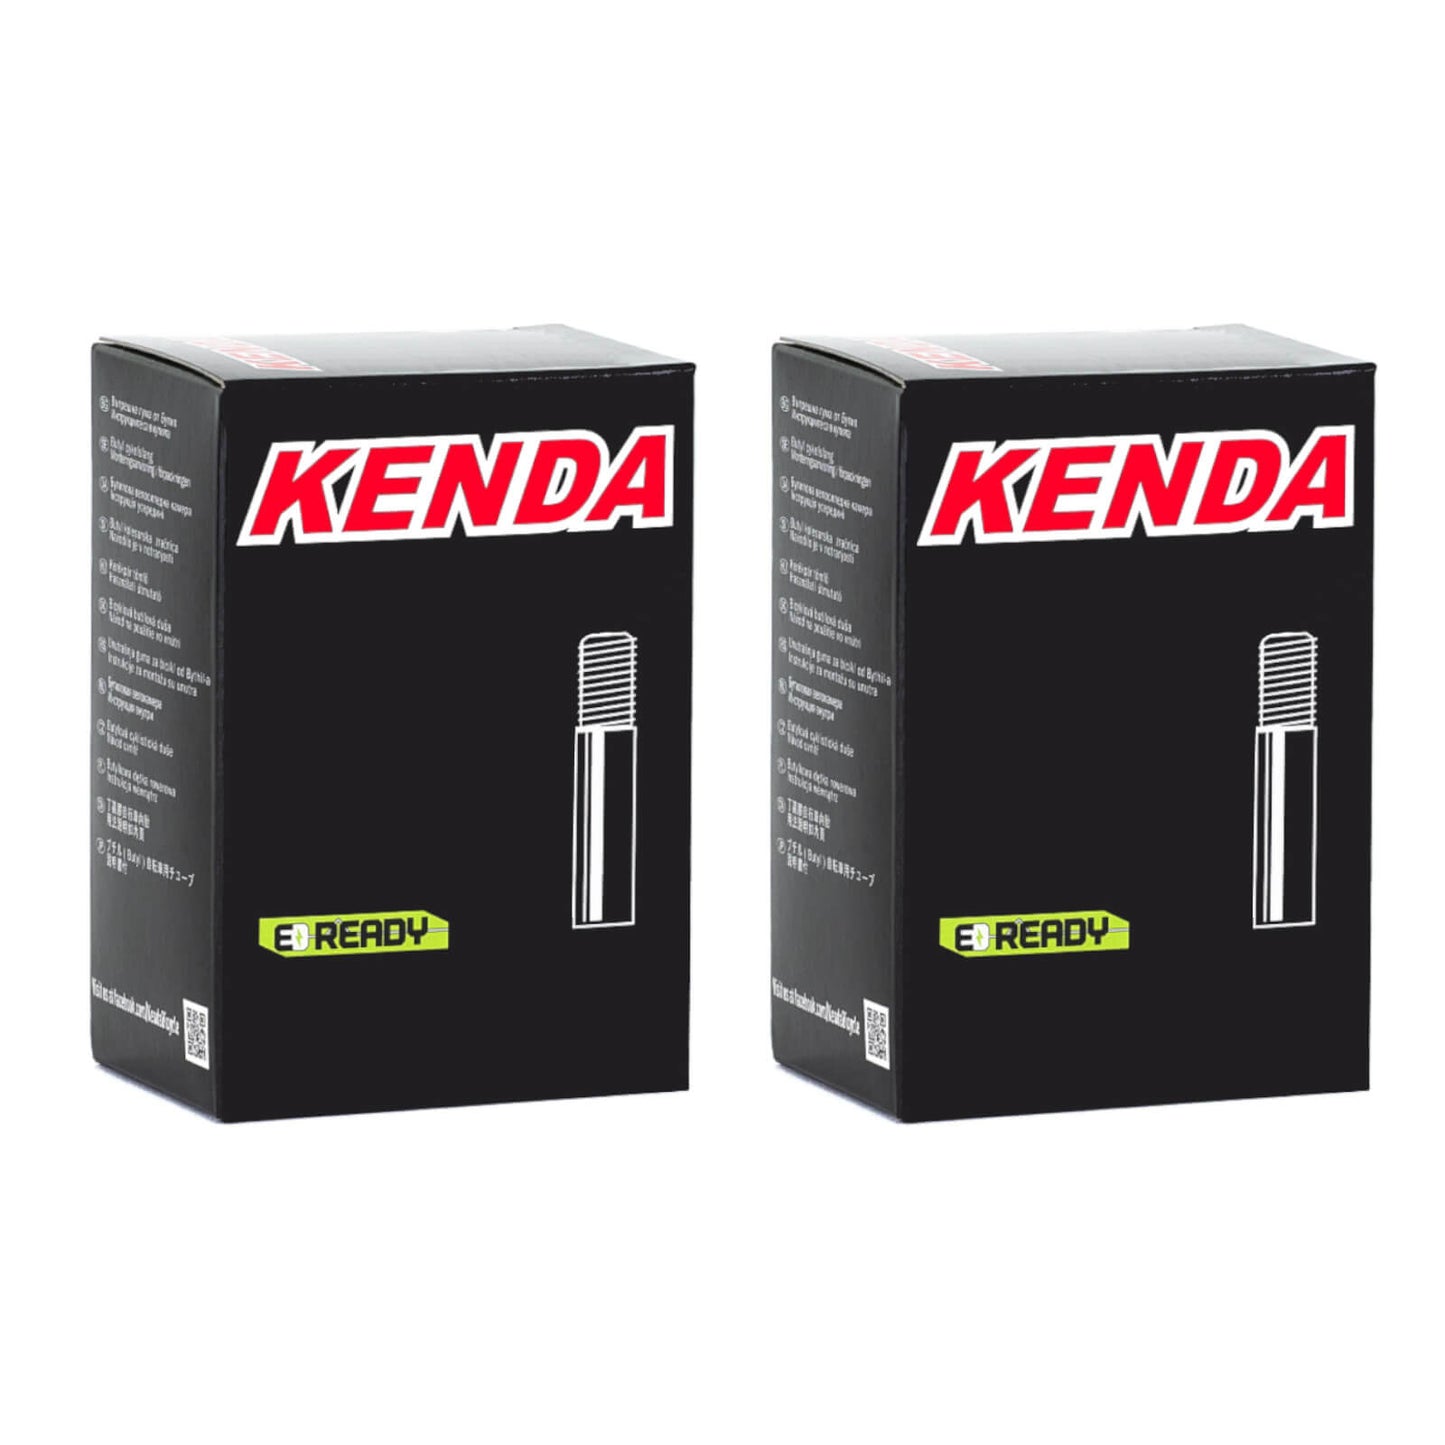 Kenda 27.5x1.9-2.125" 27.5 Inch Schrader Valve Bike Inner Tube Pack of 2